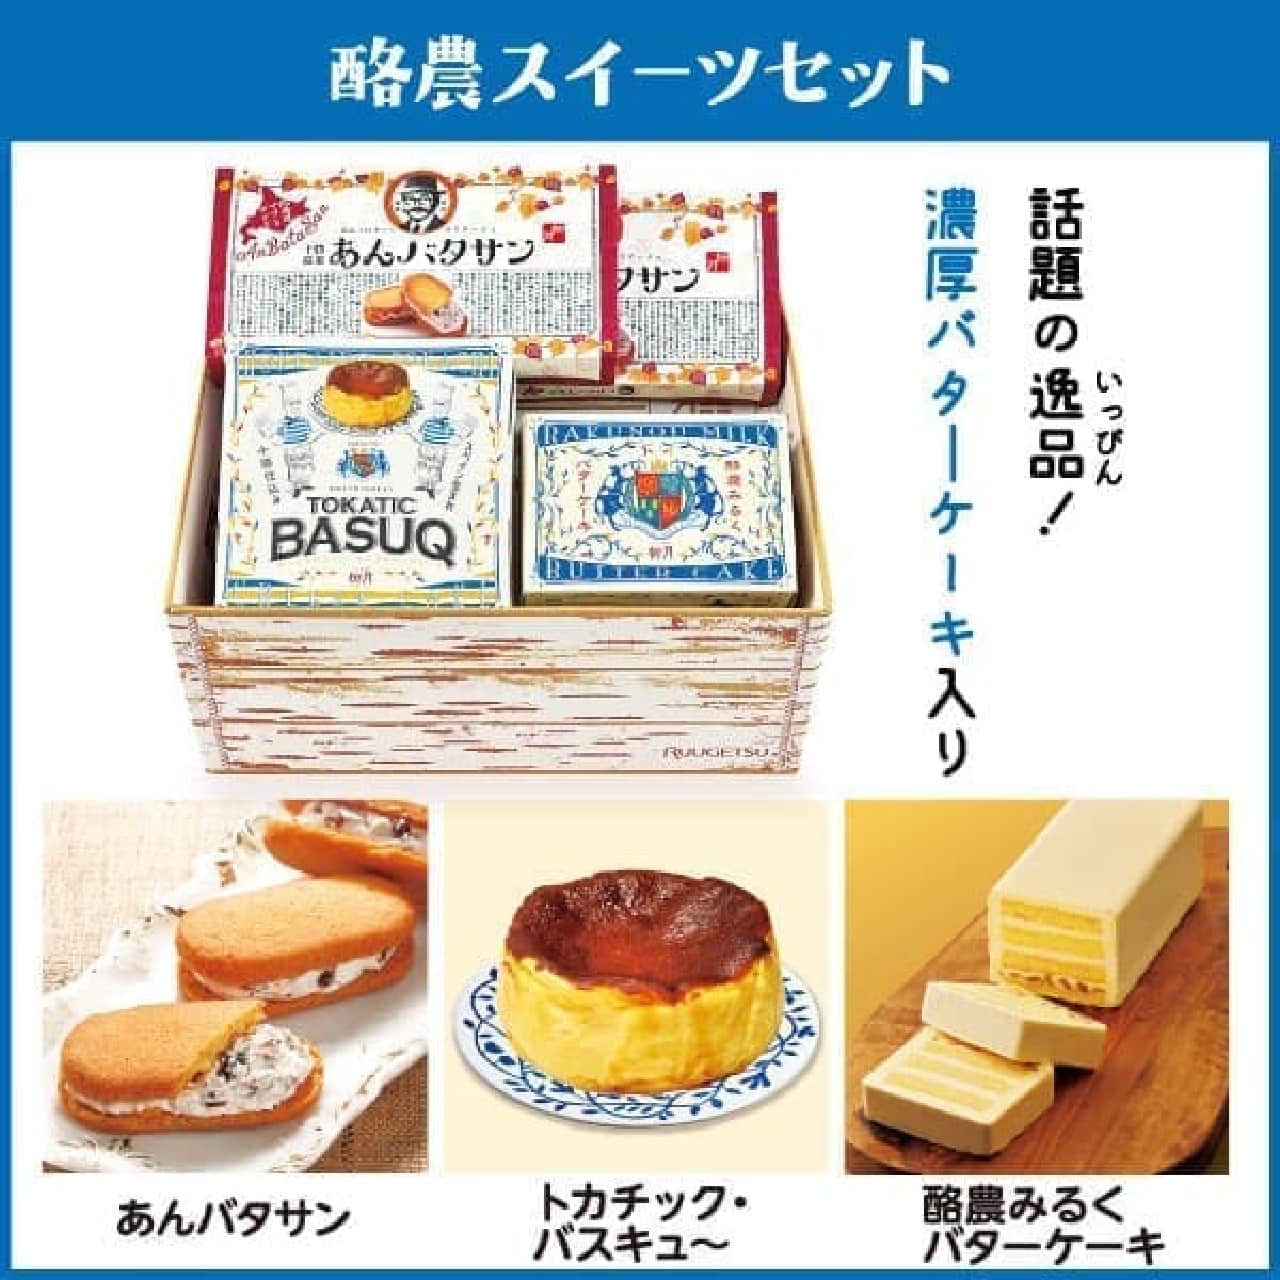 柳月 3つのお菓子セット送料無料キャンペーン